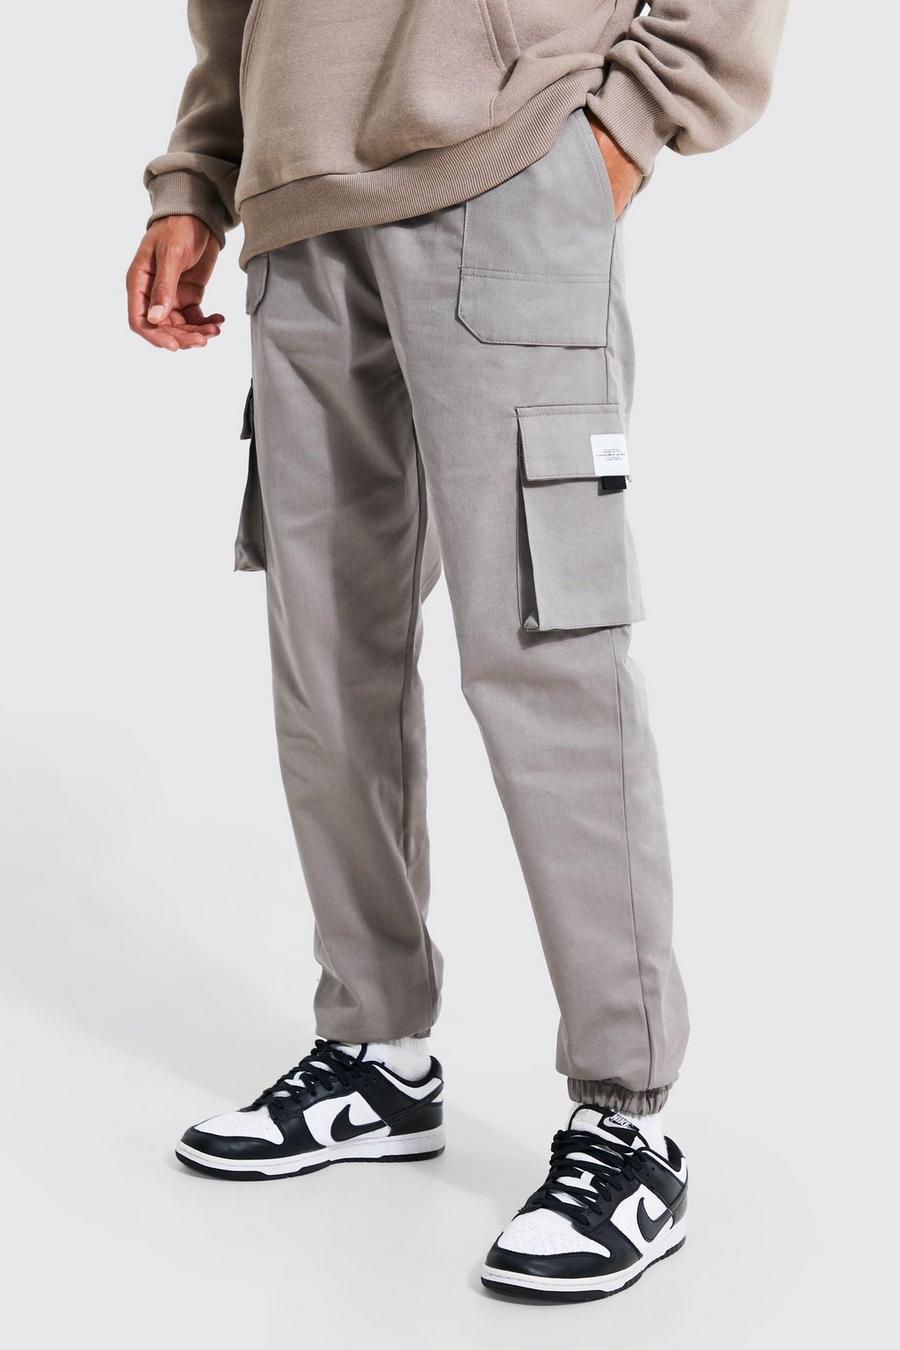 אפור gris מכנסי ריצה טוויל דגמ'ח עם חגורה בחזית ותווית לגברים גבוהים